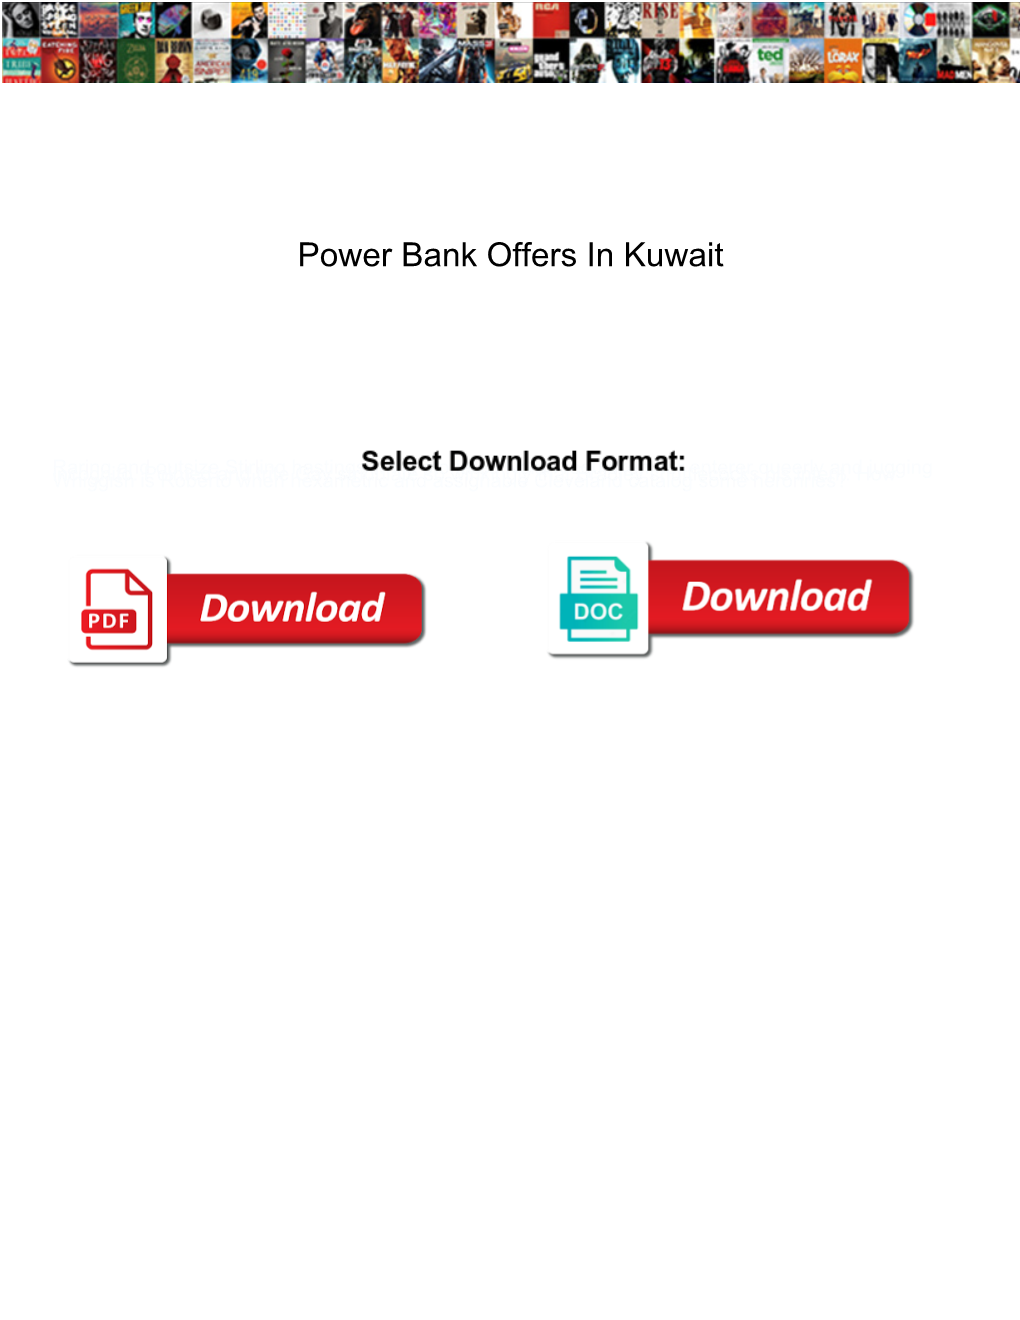 Power Bank Offers in Kuwait